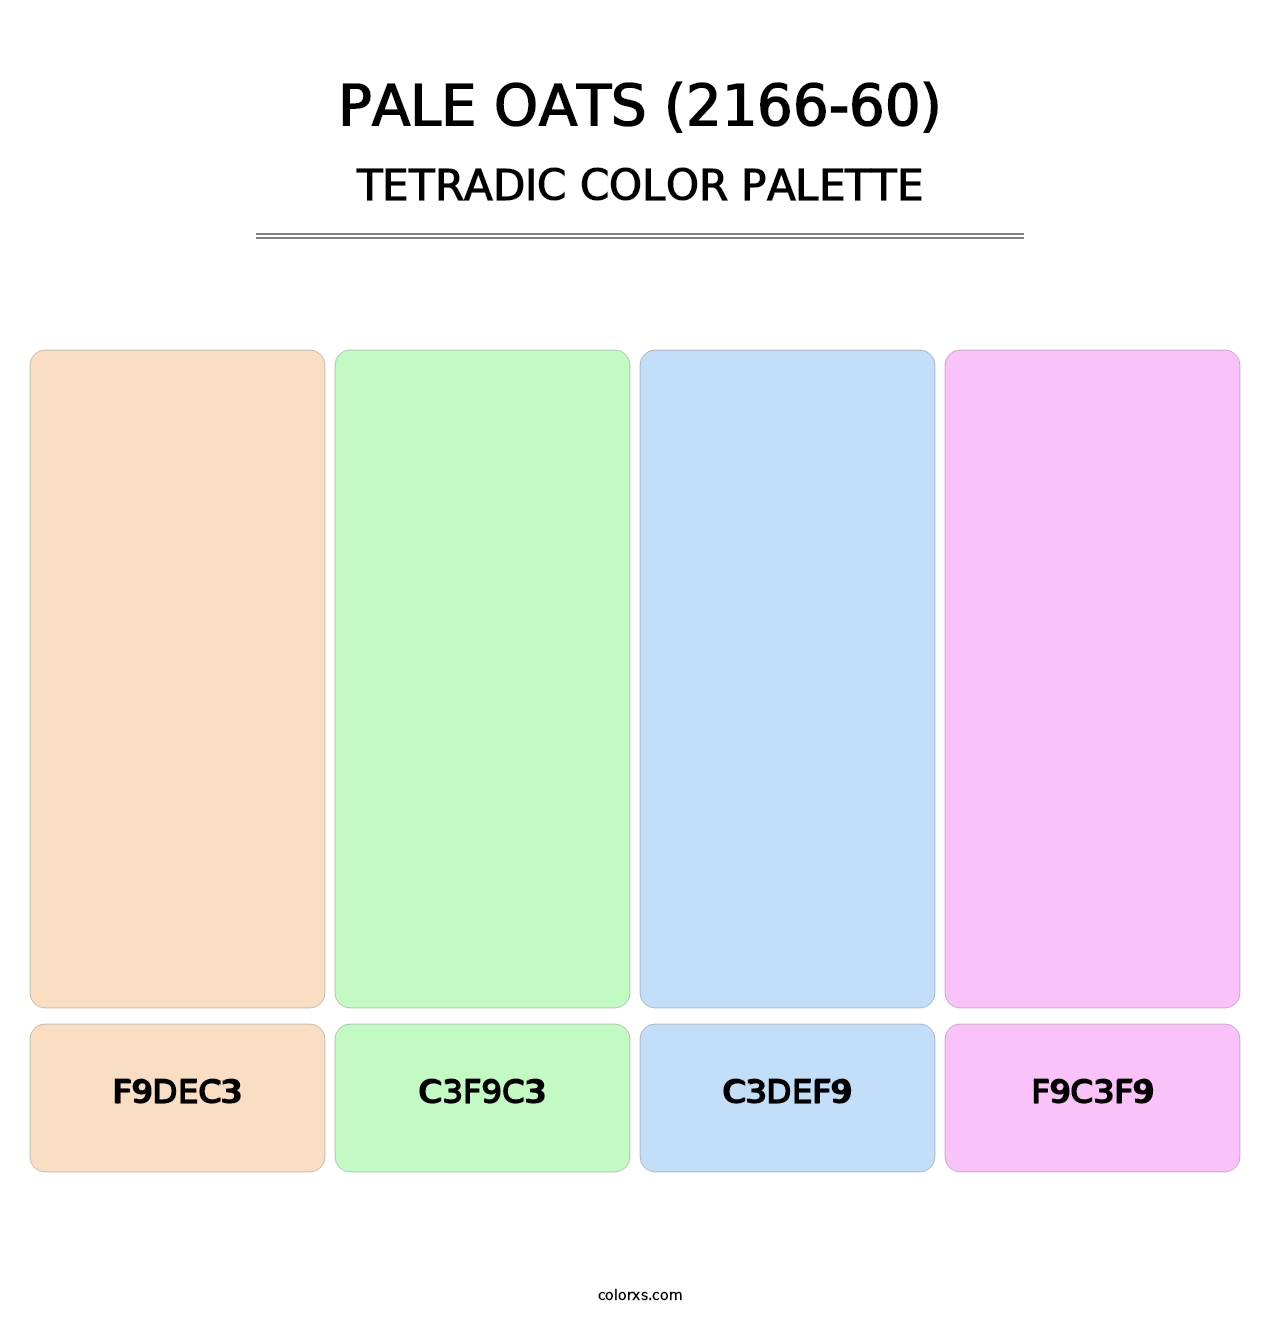 Pale Oats (2166-60) - Tetradic Color Palette